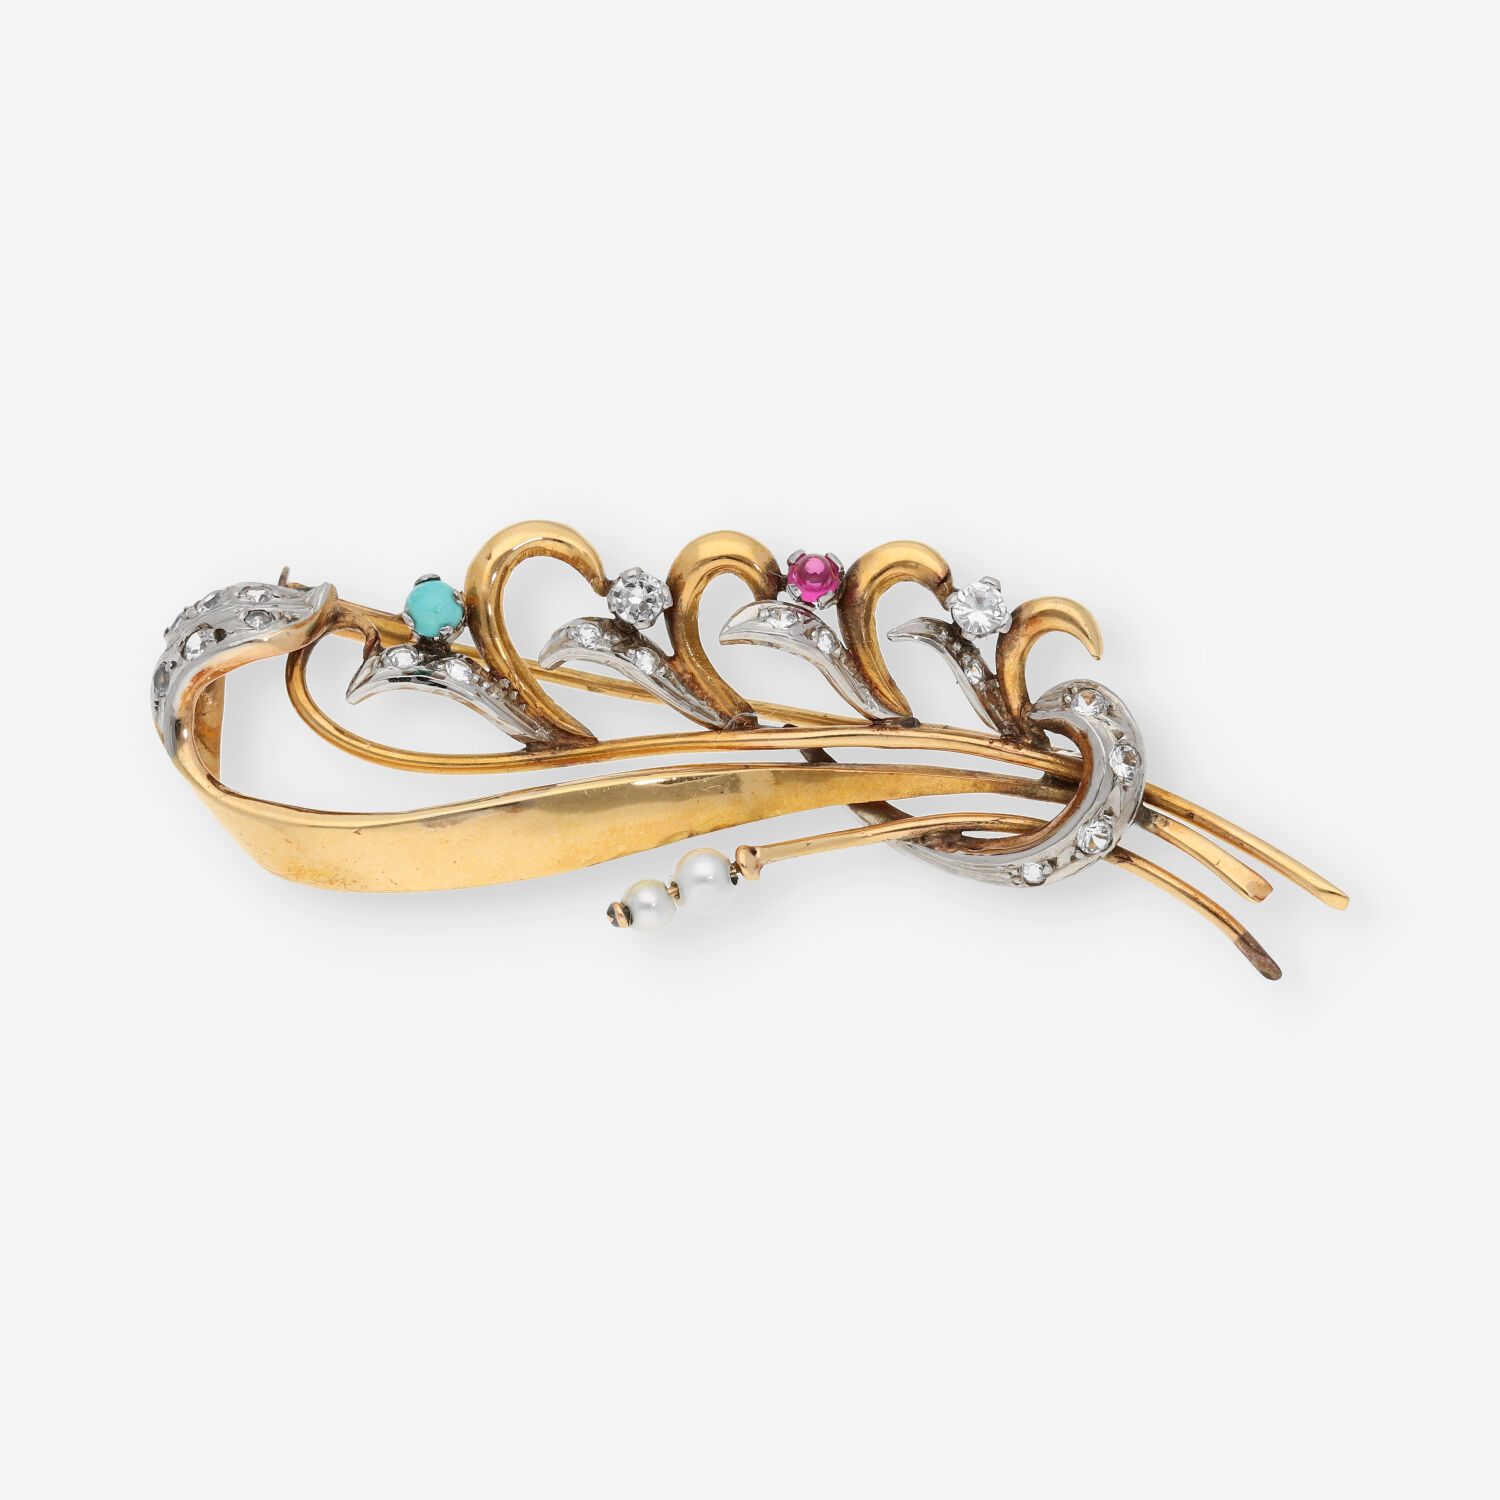 Citar Ennegrecer Discrepancia Broche de oro con perlitas y piedras de color | Comprar broches de segunda  mano